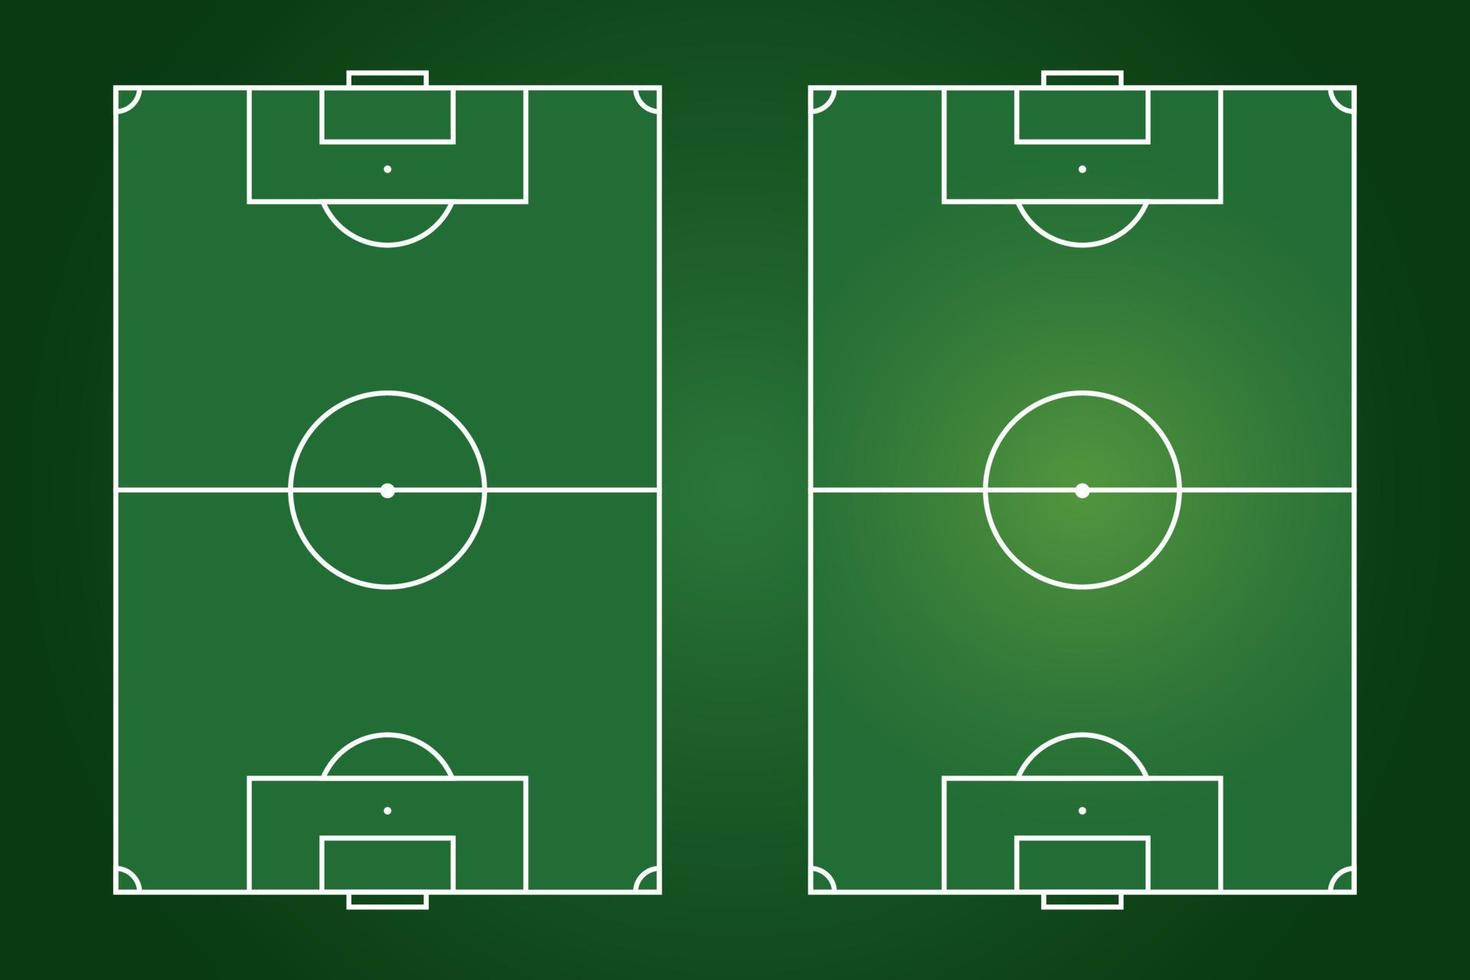 design plano de campo de futebol, ilustração gráfica de campo de futebol, vetor de quadra de futebol e layout.